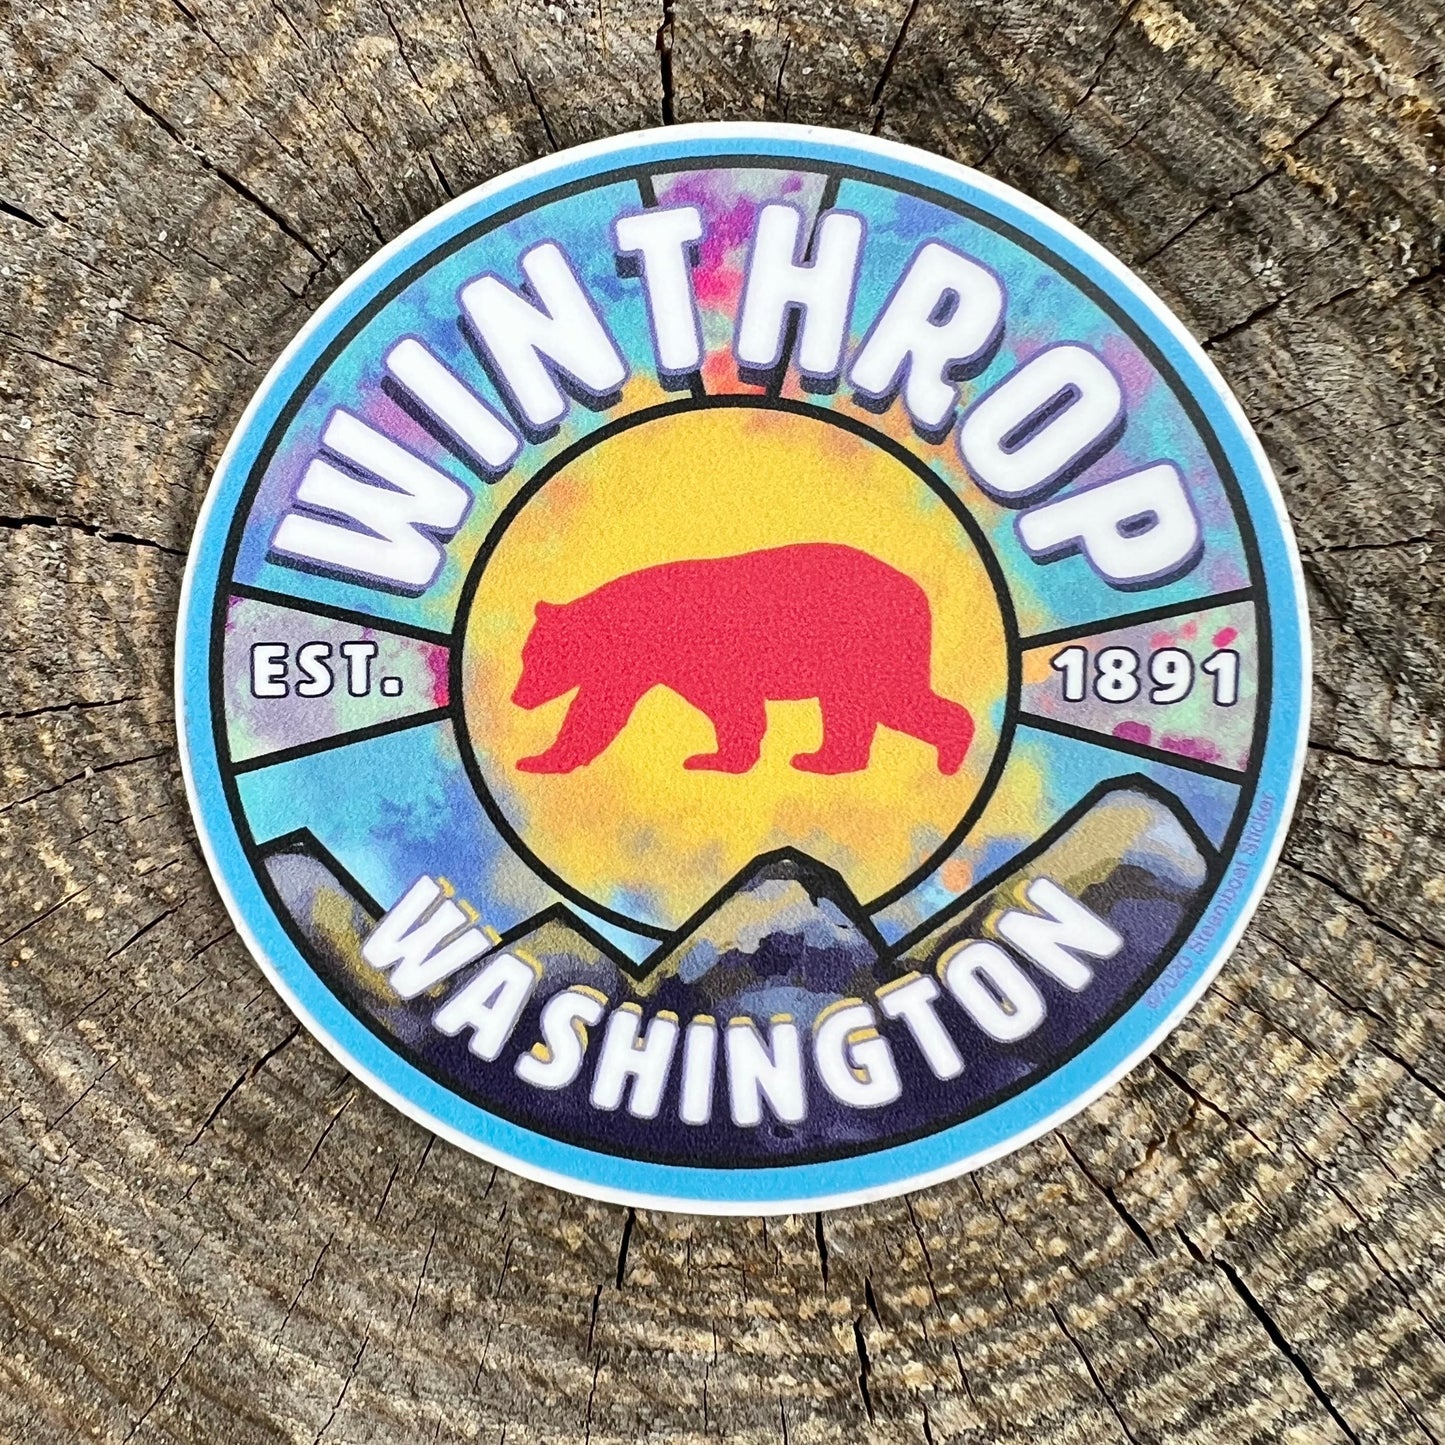 Bear Winthrop Washington